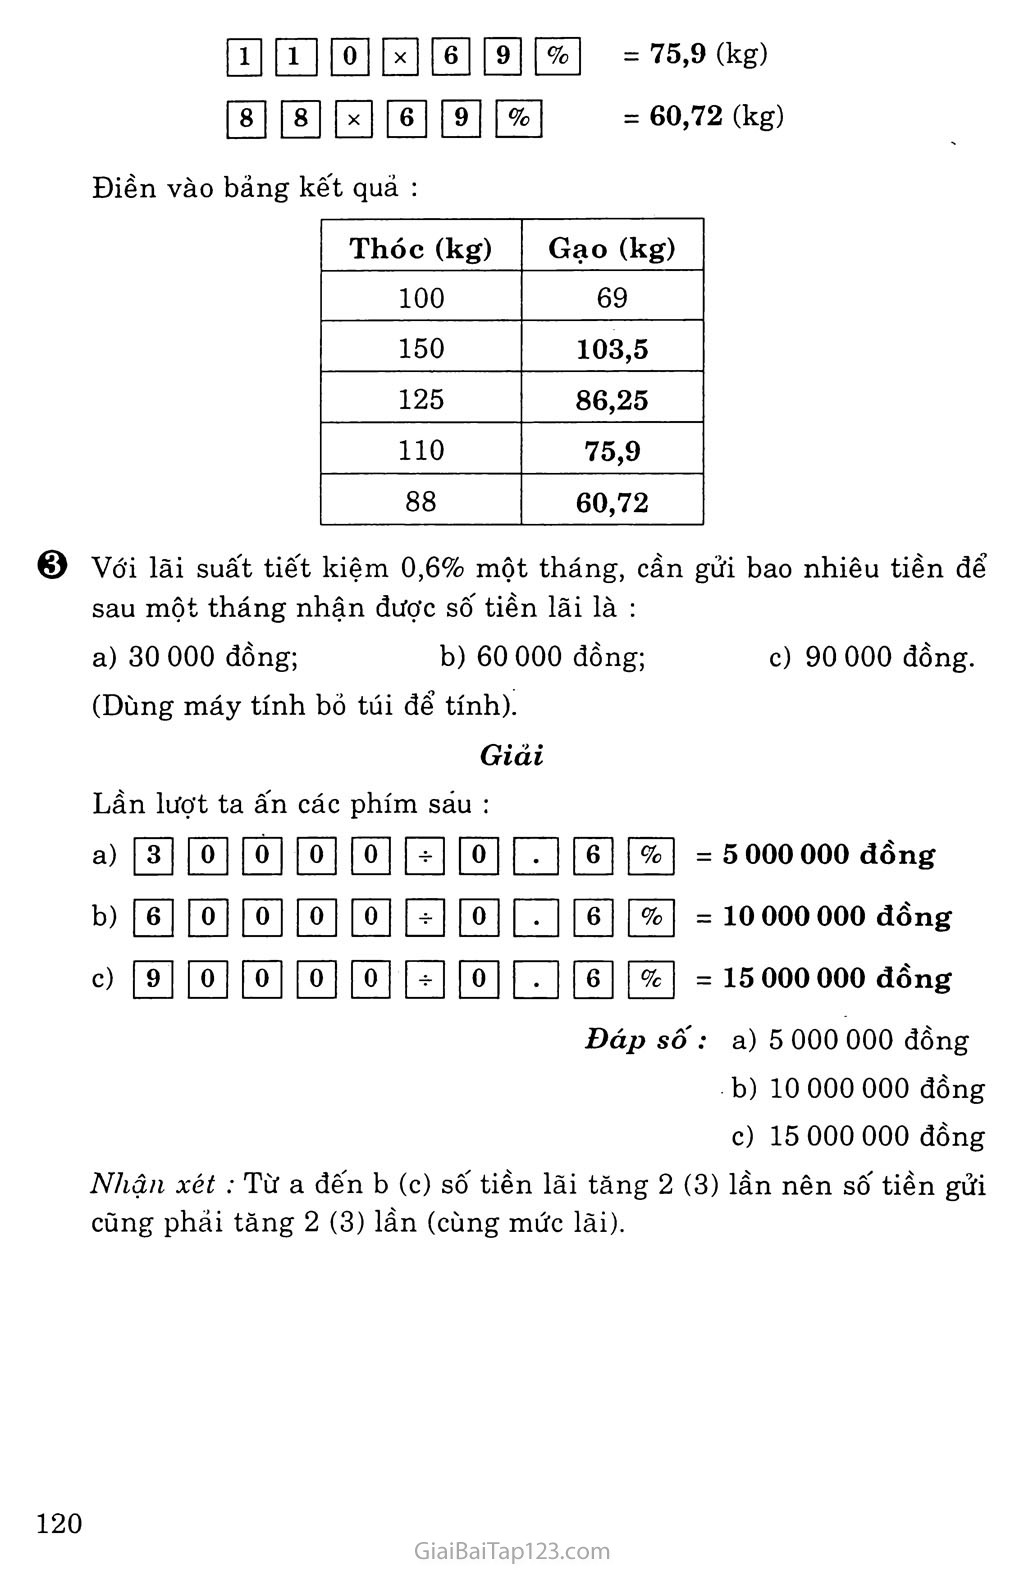 Sử dụng máy tính bỏ túi để giải toán về tỉ số phần trăm trang 3